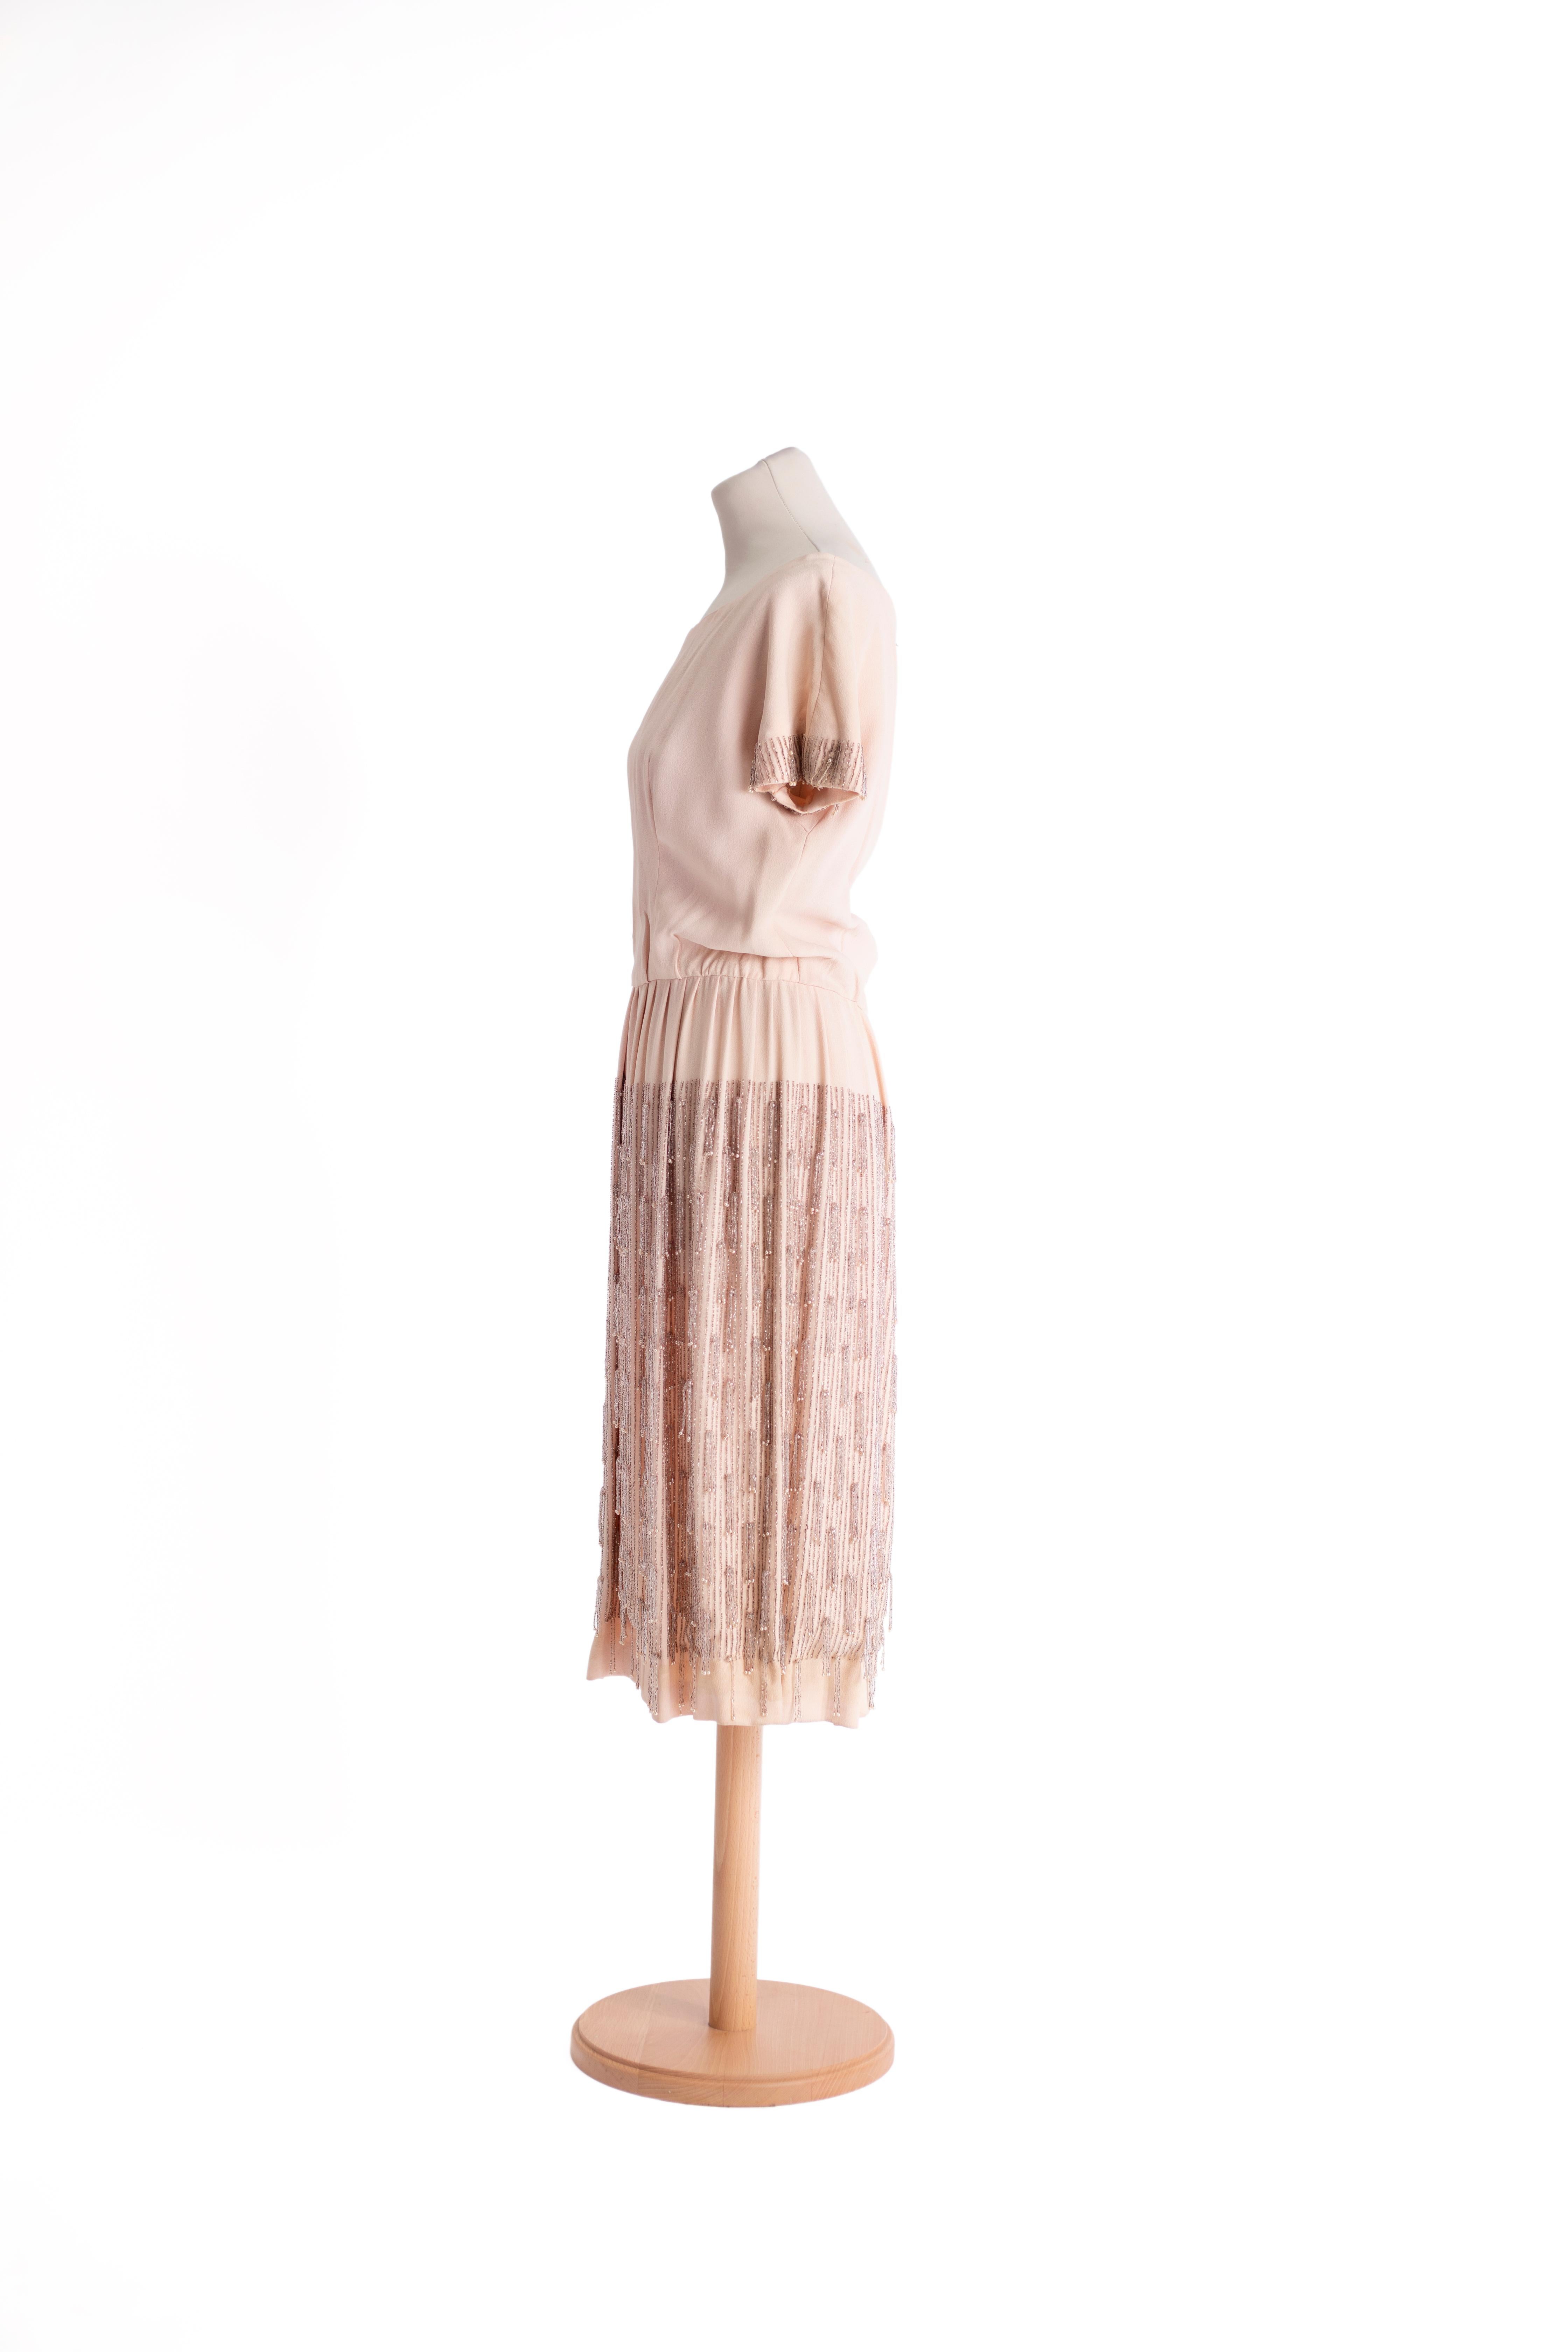 1960er Jahre Bernard Sagardoy  Vintage Kleid, aus hellrosa Seide, mit Bootsausschnitt und Perleneinsatz an den kurzen Ärmeln und am Rockteil.

GRÖSSE IT: 42
GRÖSSE USA: 10

Maßnahmen:
Taille: 72 cm
Länge: 107 cm
Oberweite: 88 cm
